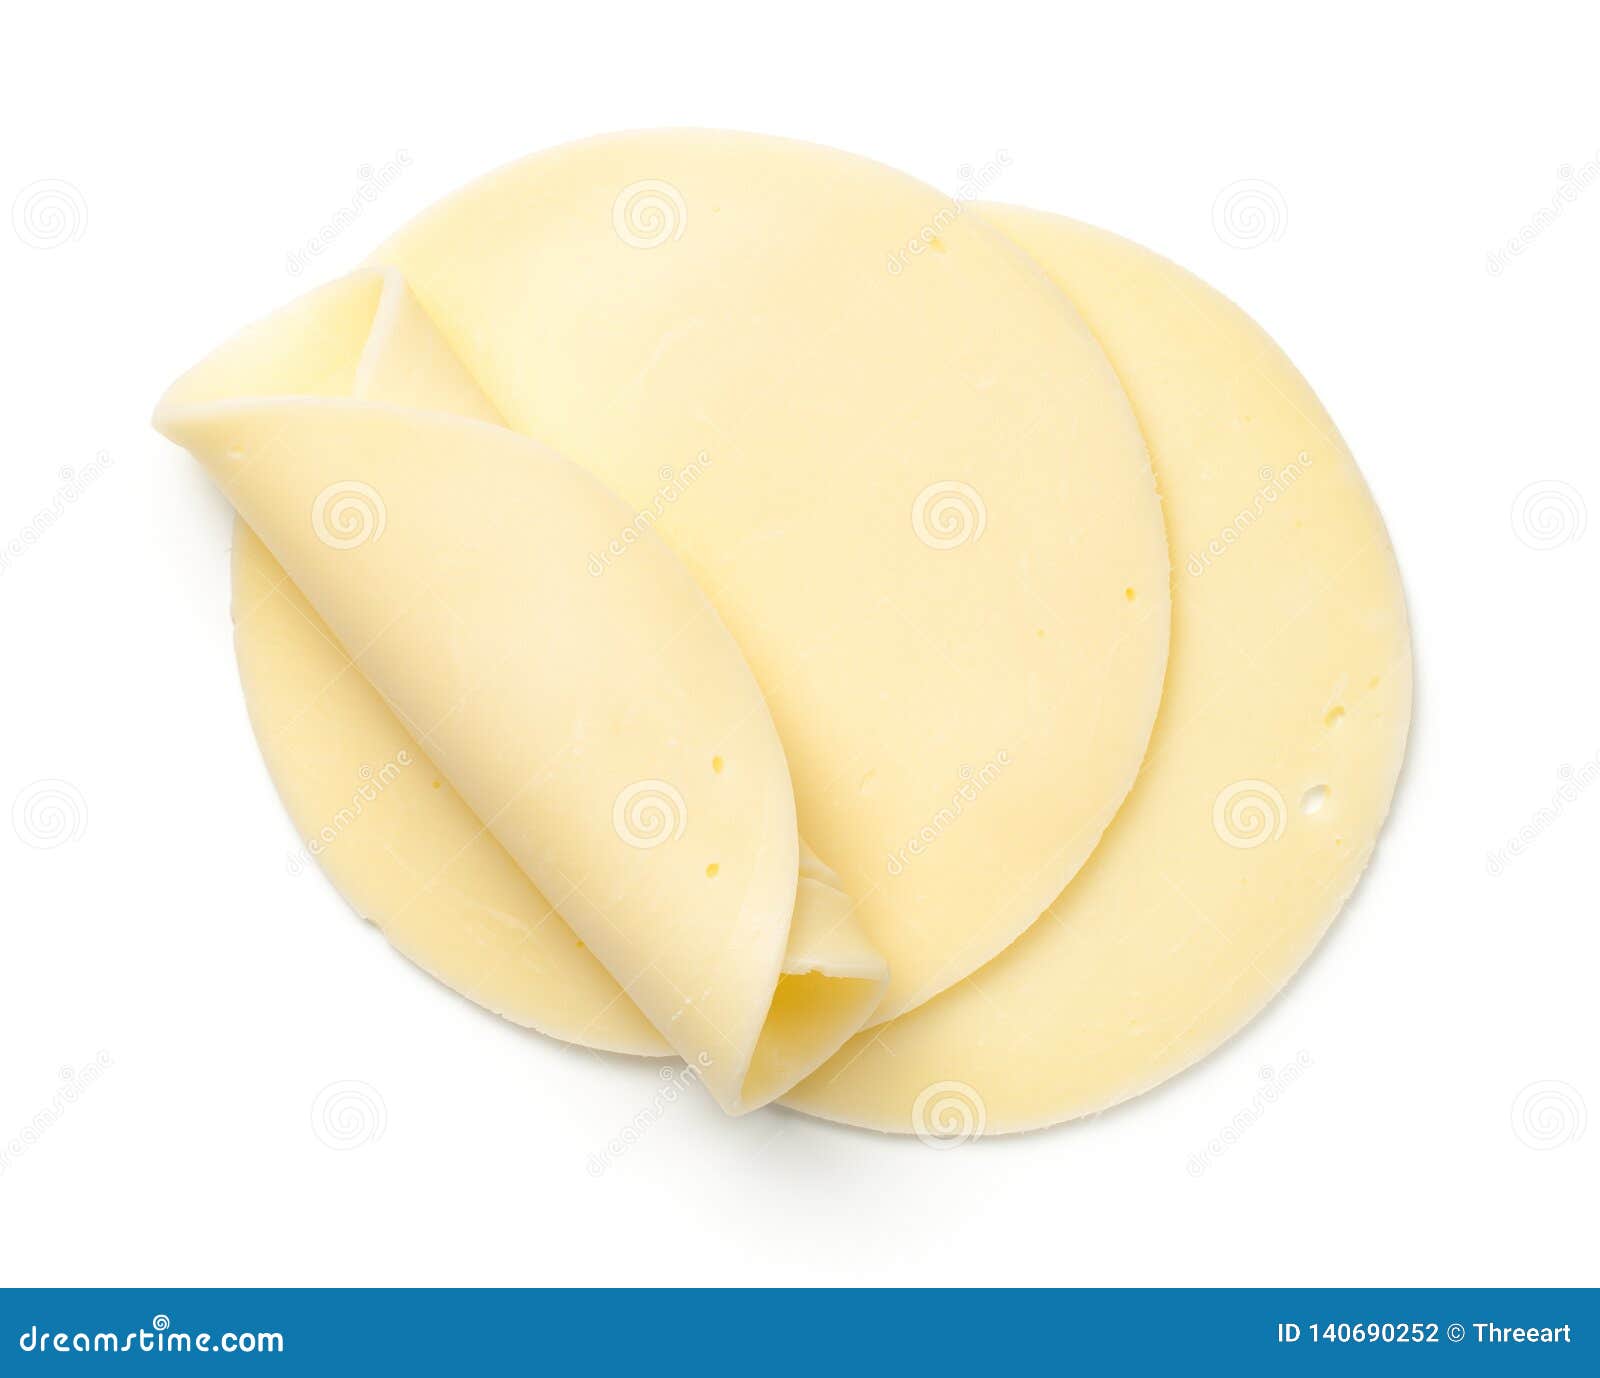 mozzarella cheese slices  on white background